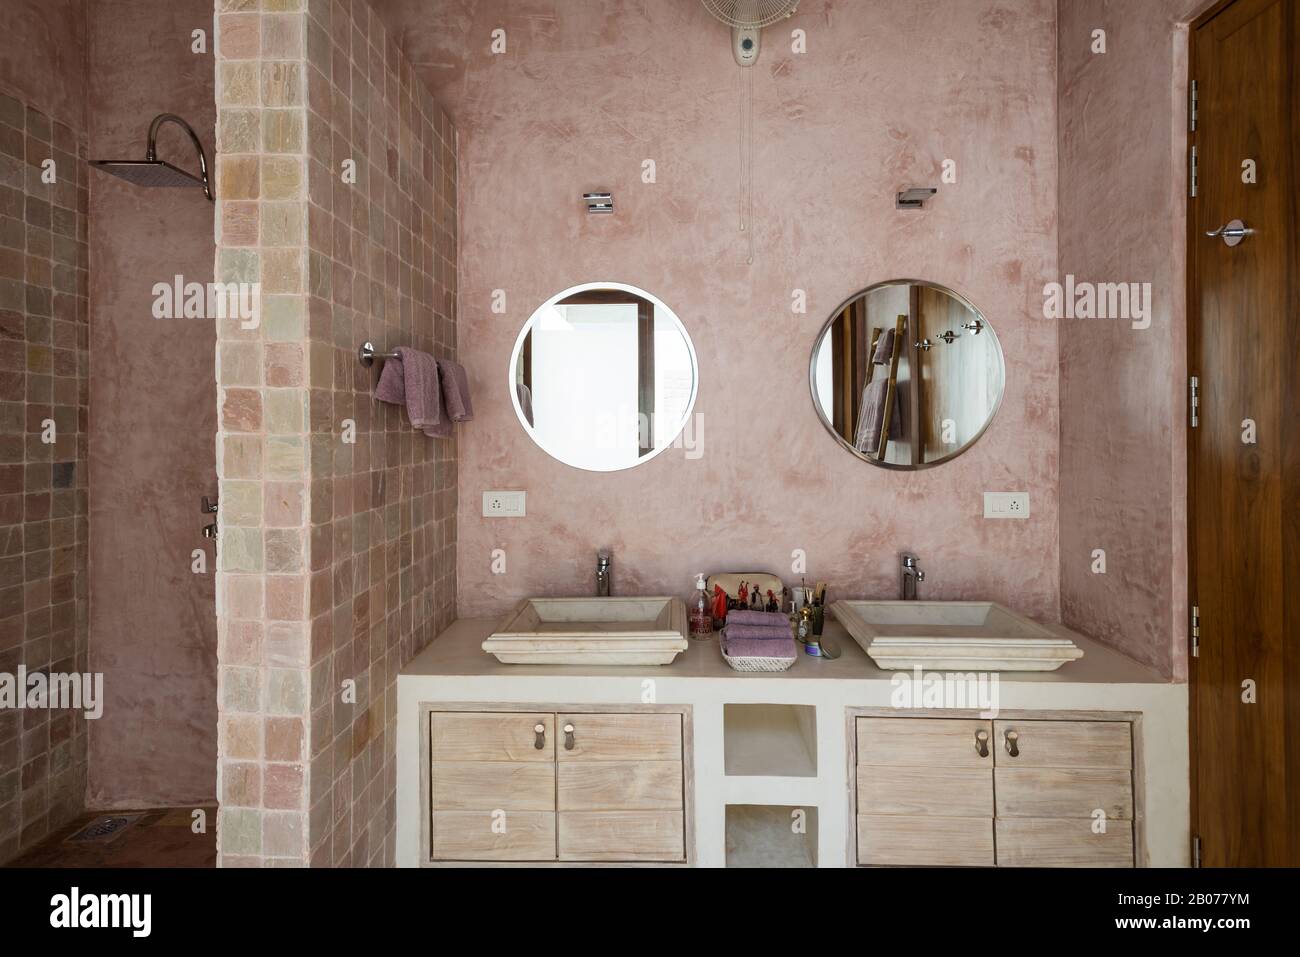 Baño en tonos rosas con espejos circulares Foto de stock